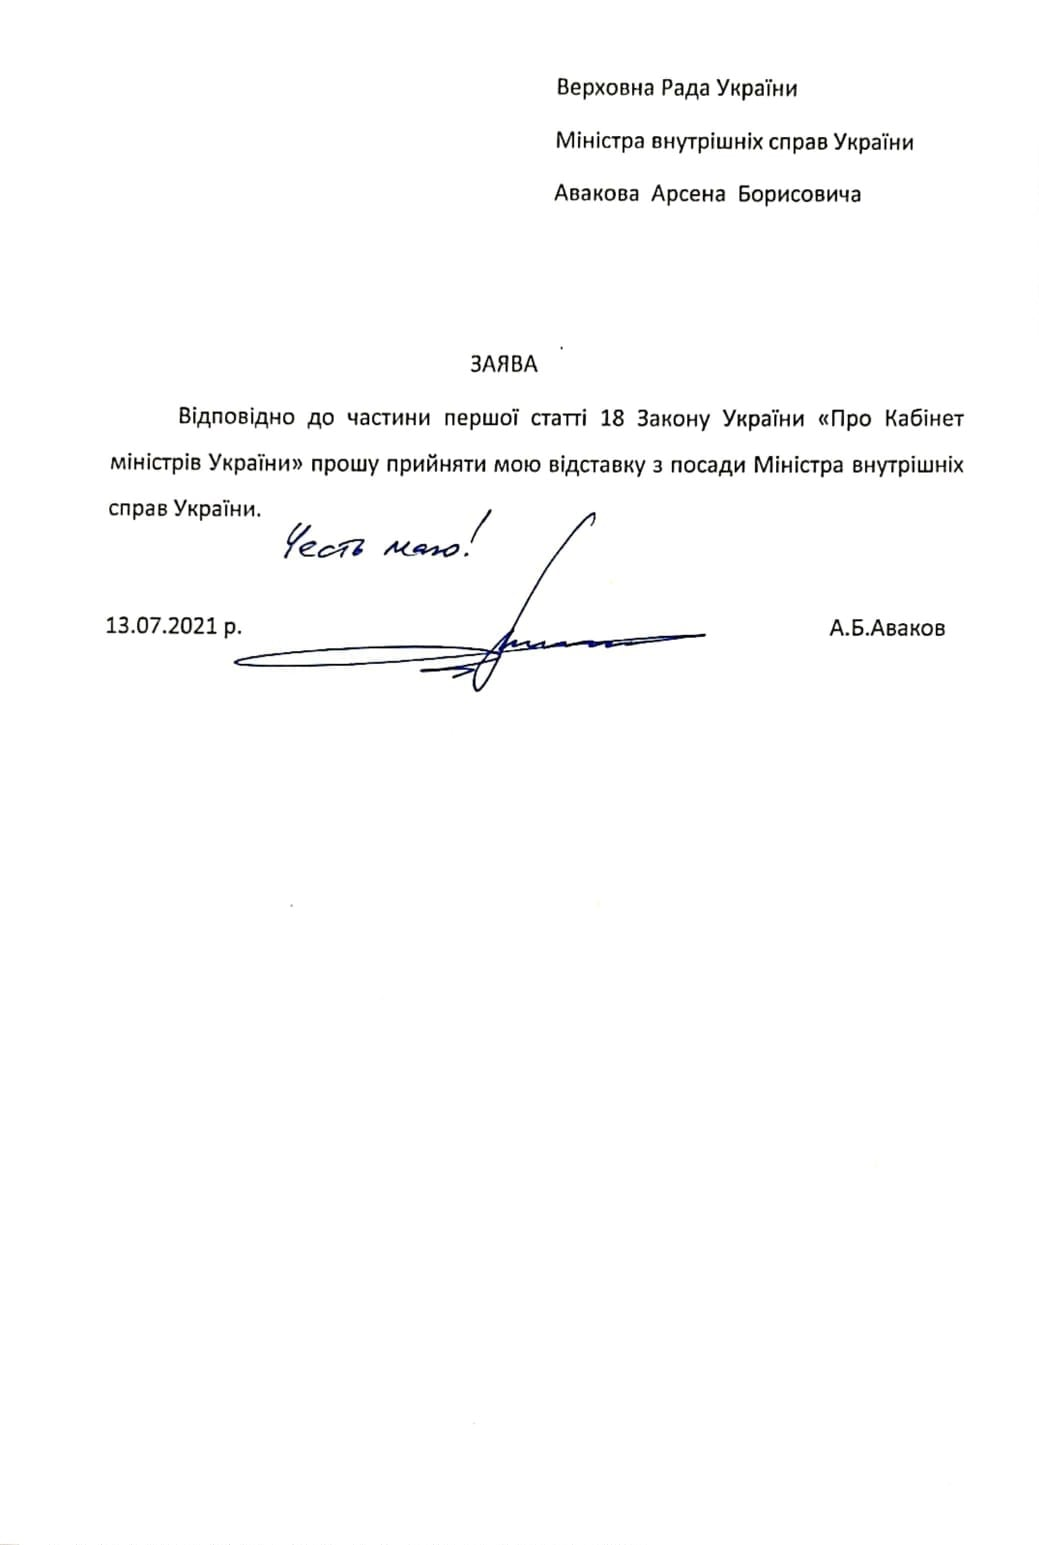 В МДВ опубликовали документ об увольнении Авакова